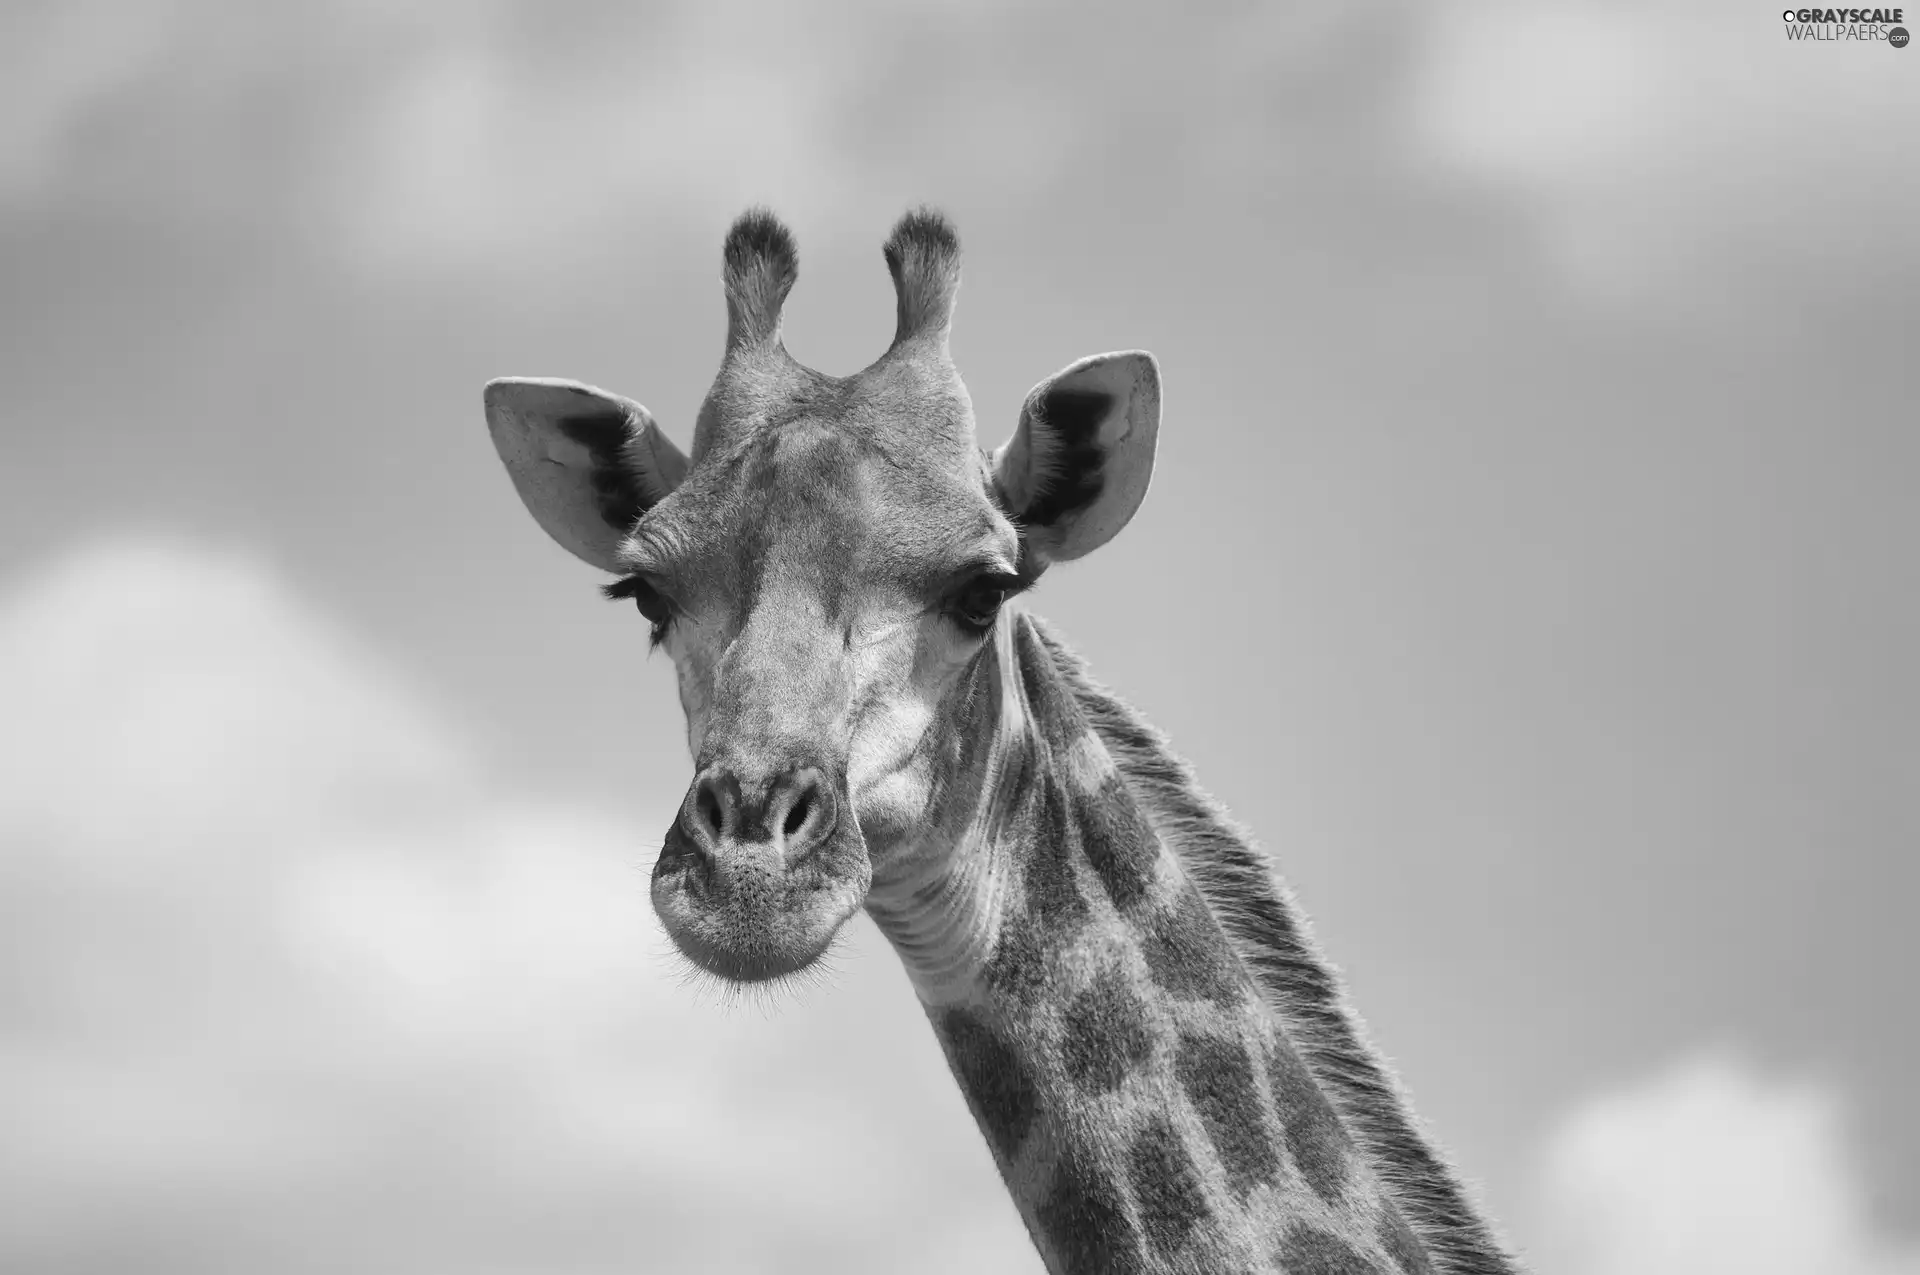 horns, giraffe, neck